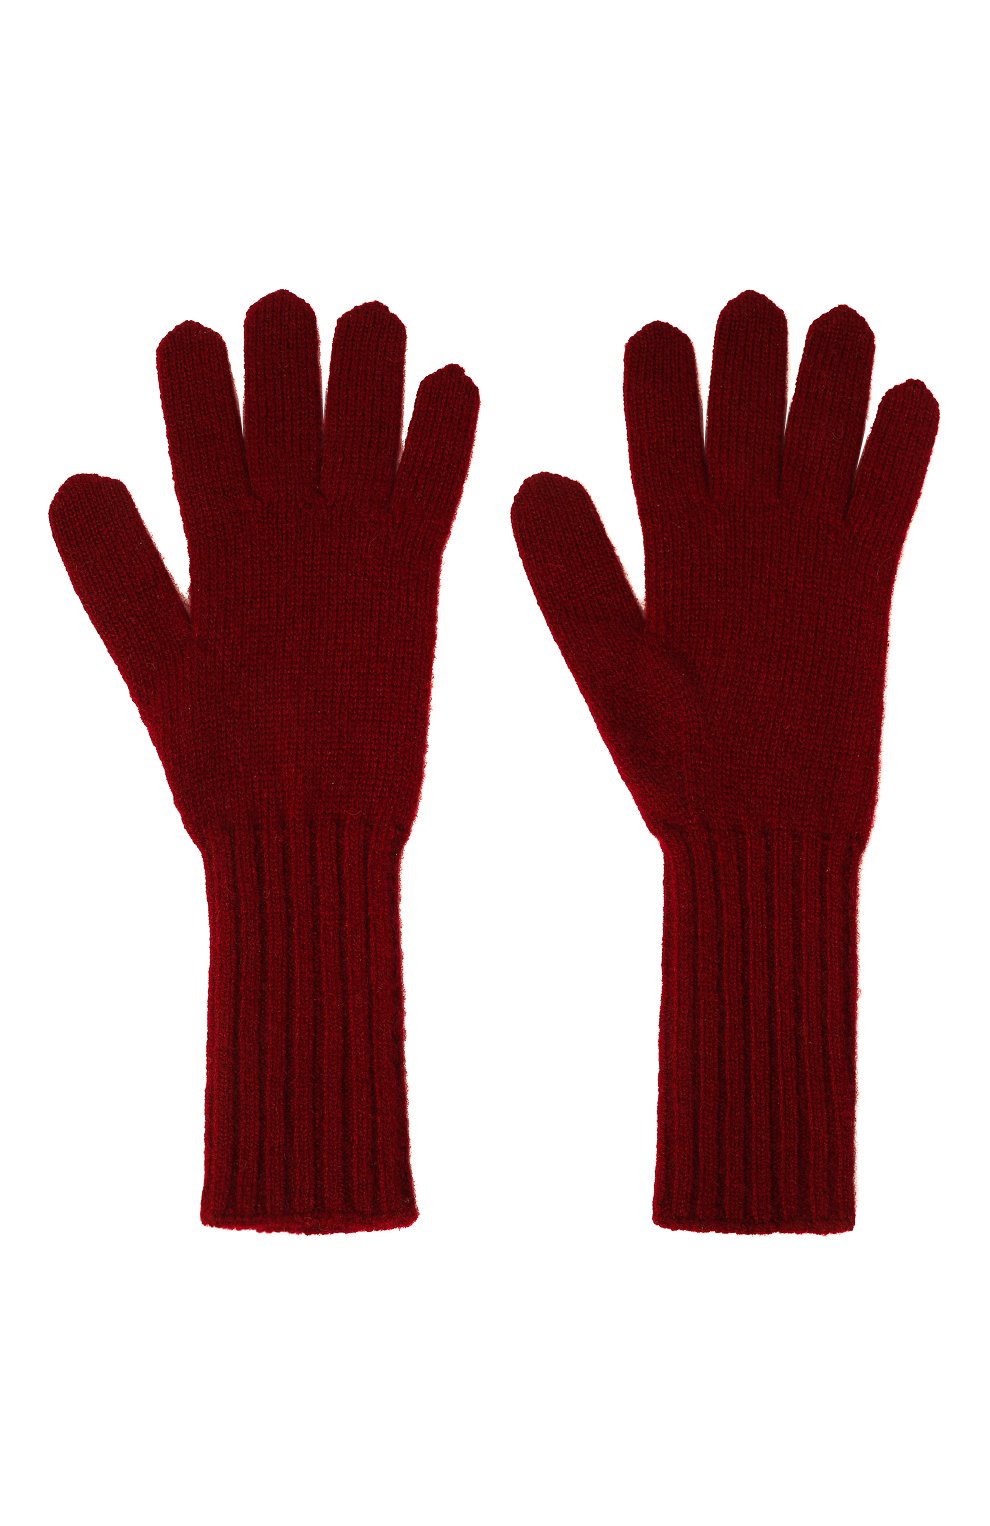 Женские кашемировые перчатки TEGIN бордового цвета, арт. 5236 | Фото 3 (Материал: Текстиль, Кашемир, Шерсть)